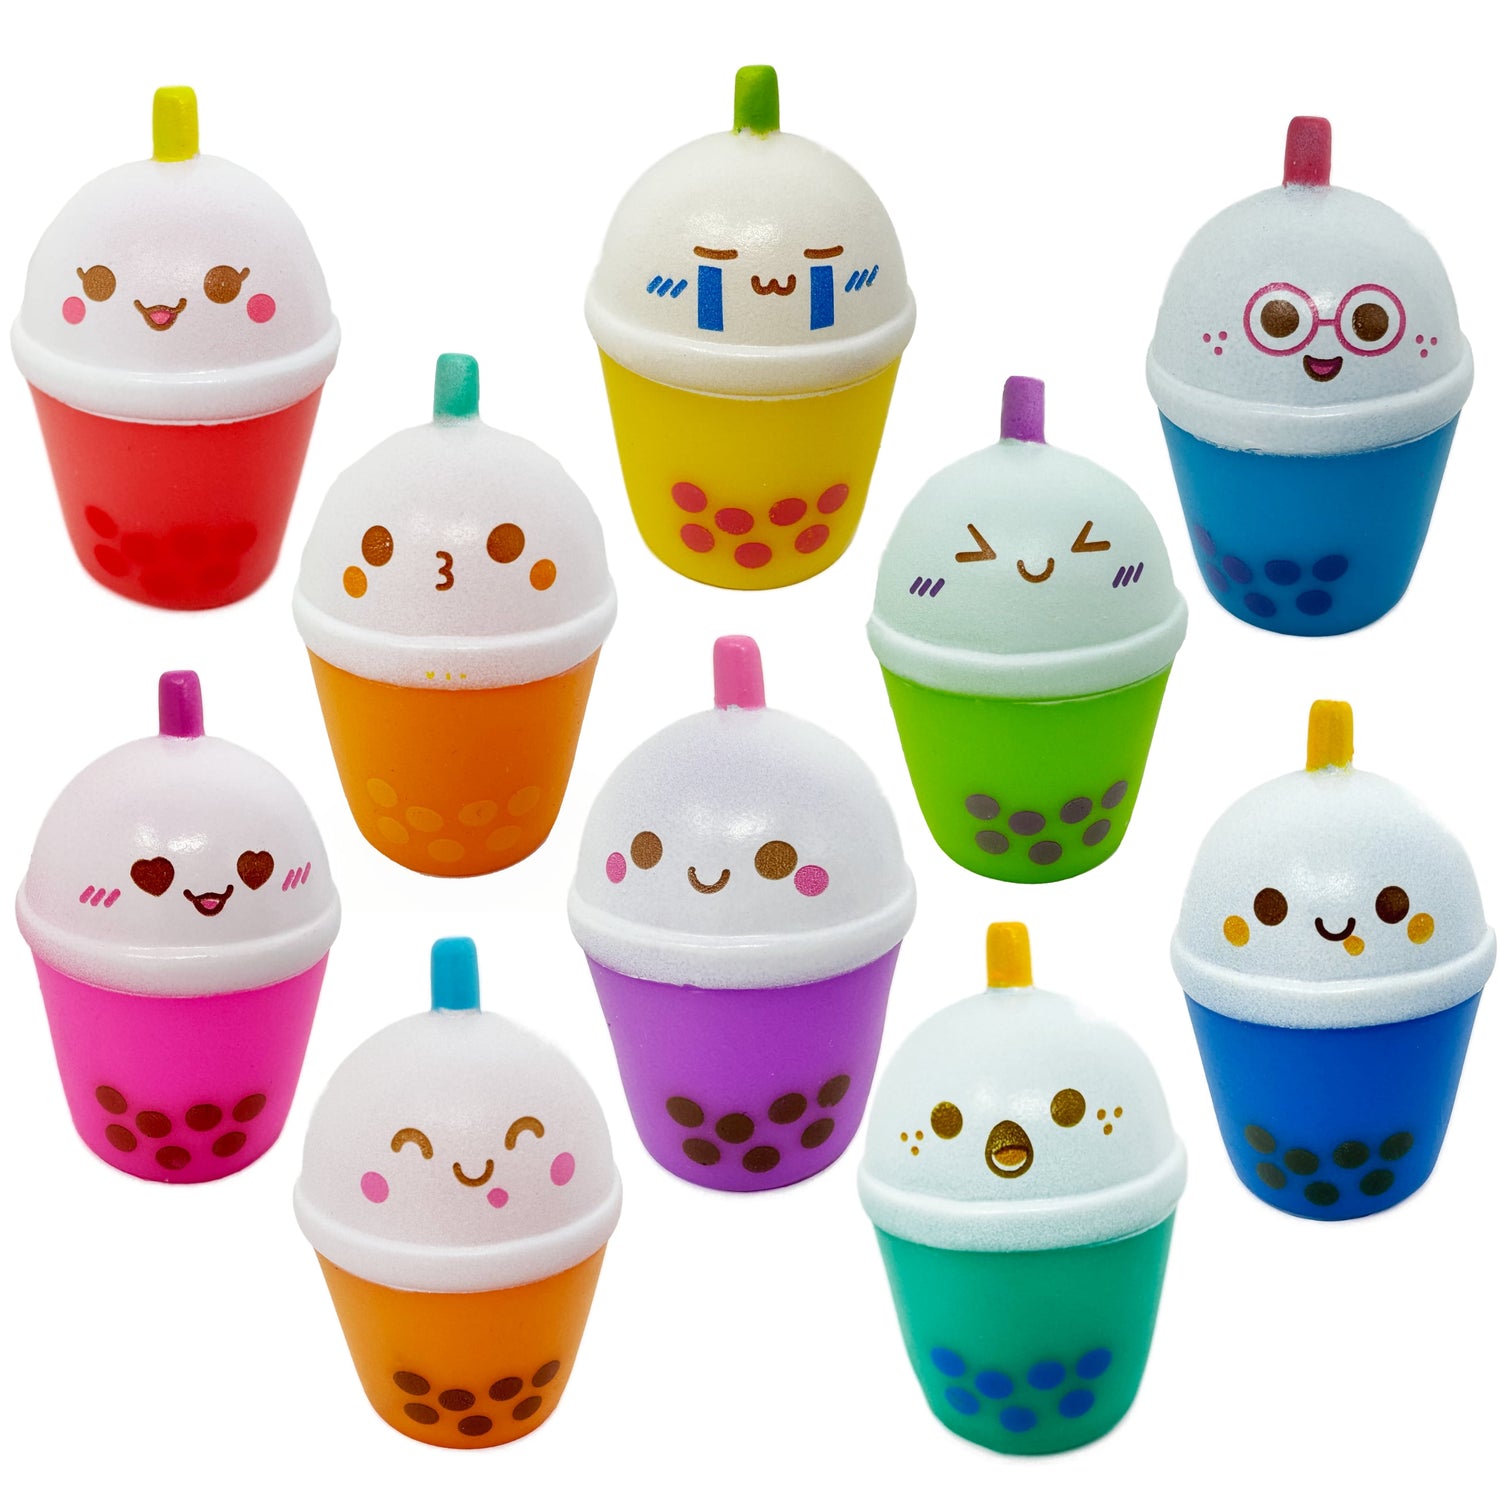 10 colorful boba bubble tea toys with cute kawaii faces